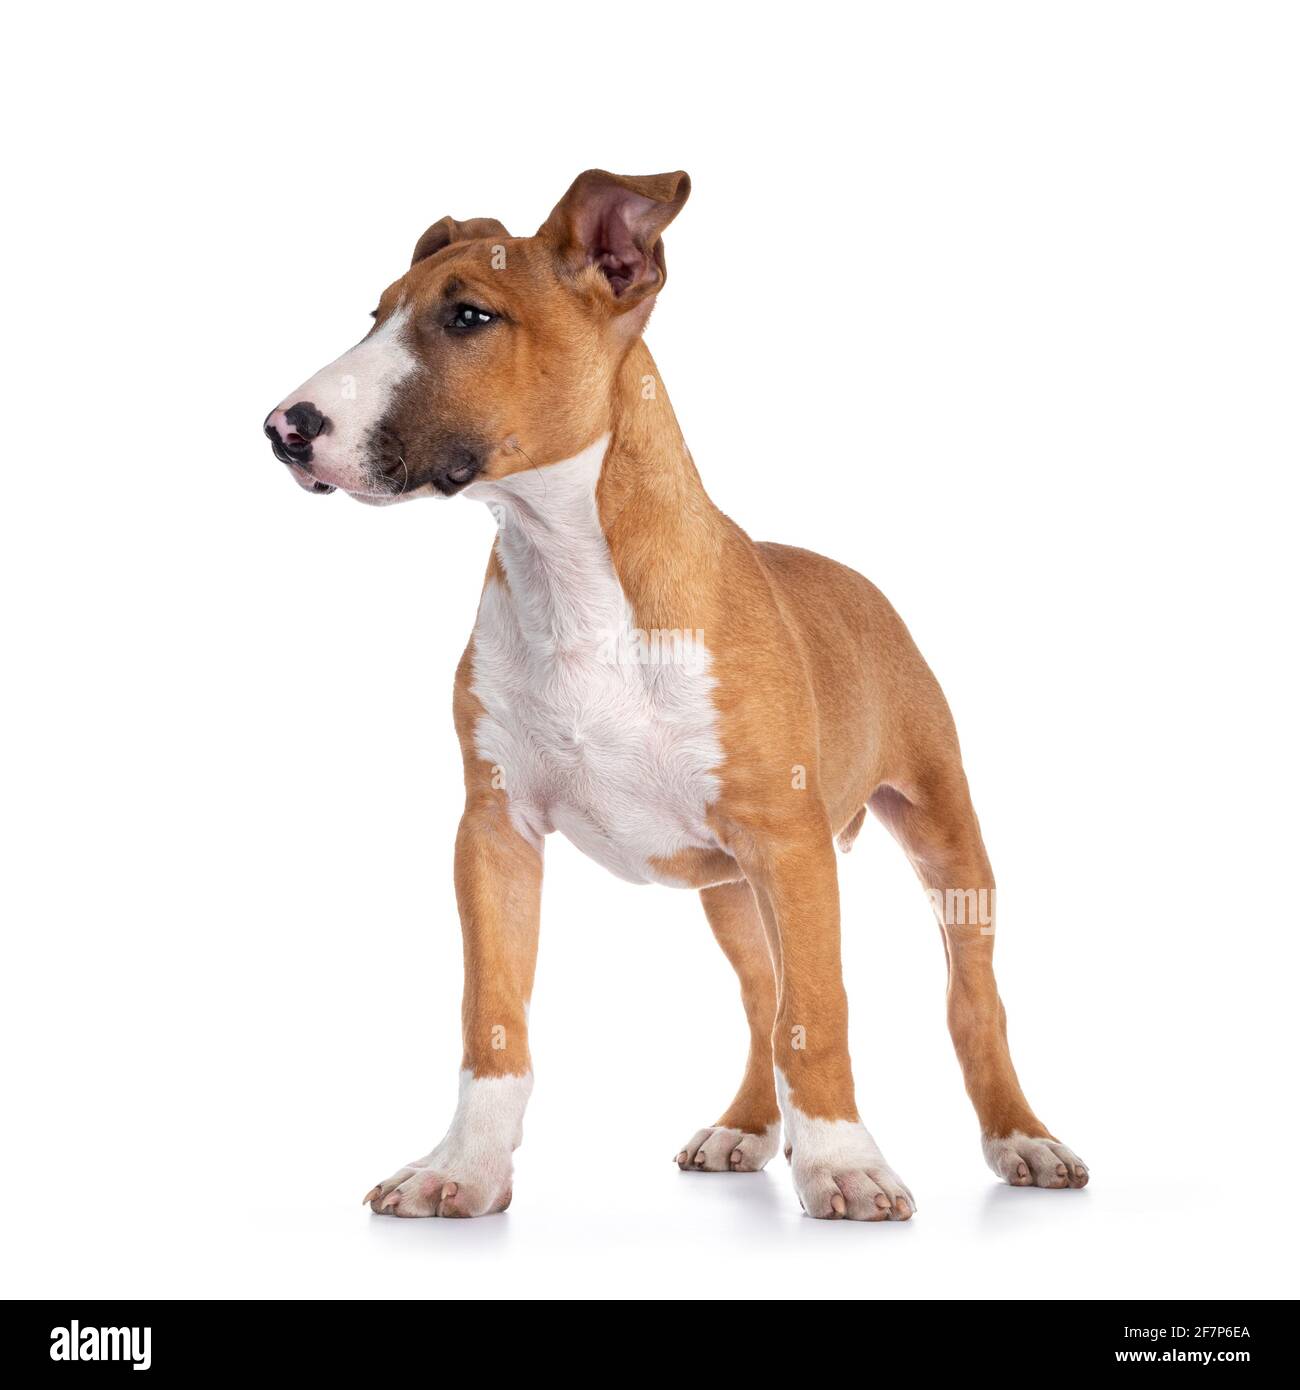 Hübsch braun mit weißem Bull Terrier Hund, der nach vorne zeigt. Seitenaufgänge zeigen Profil. Isoliert auf weißem Hintergrund. Stockfoto